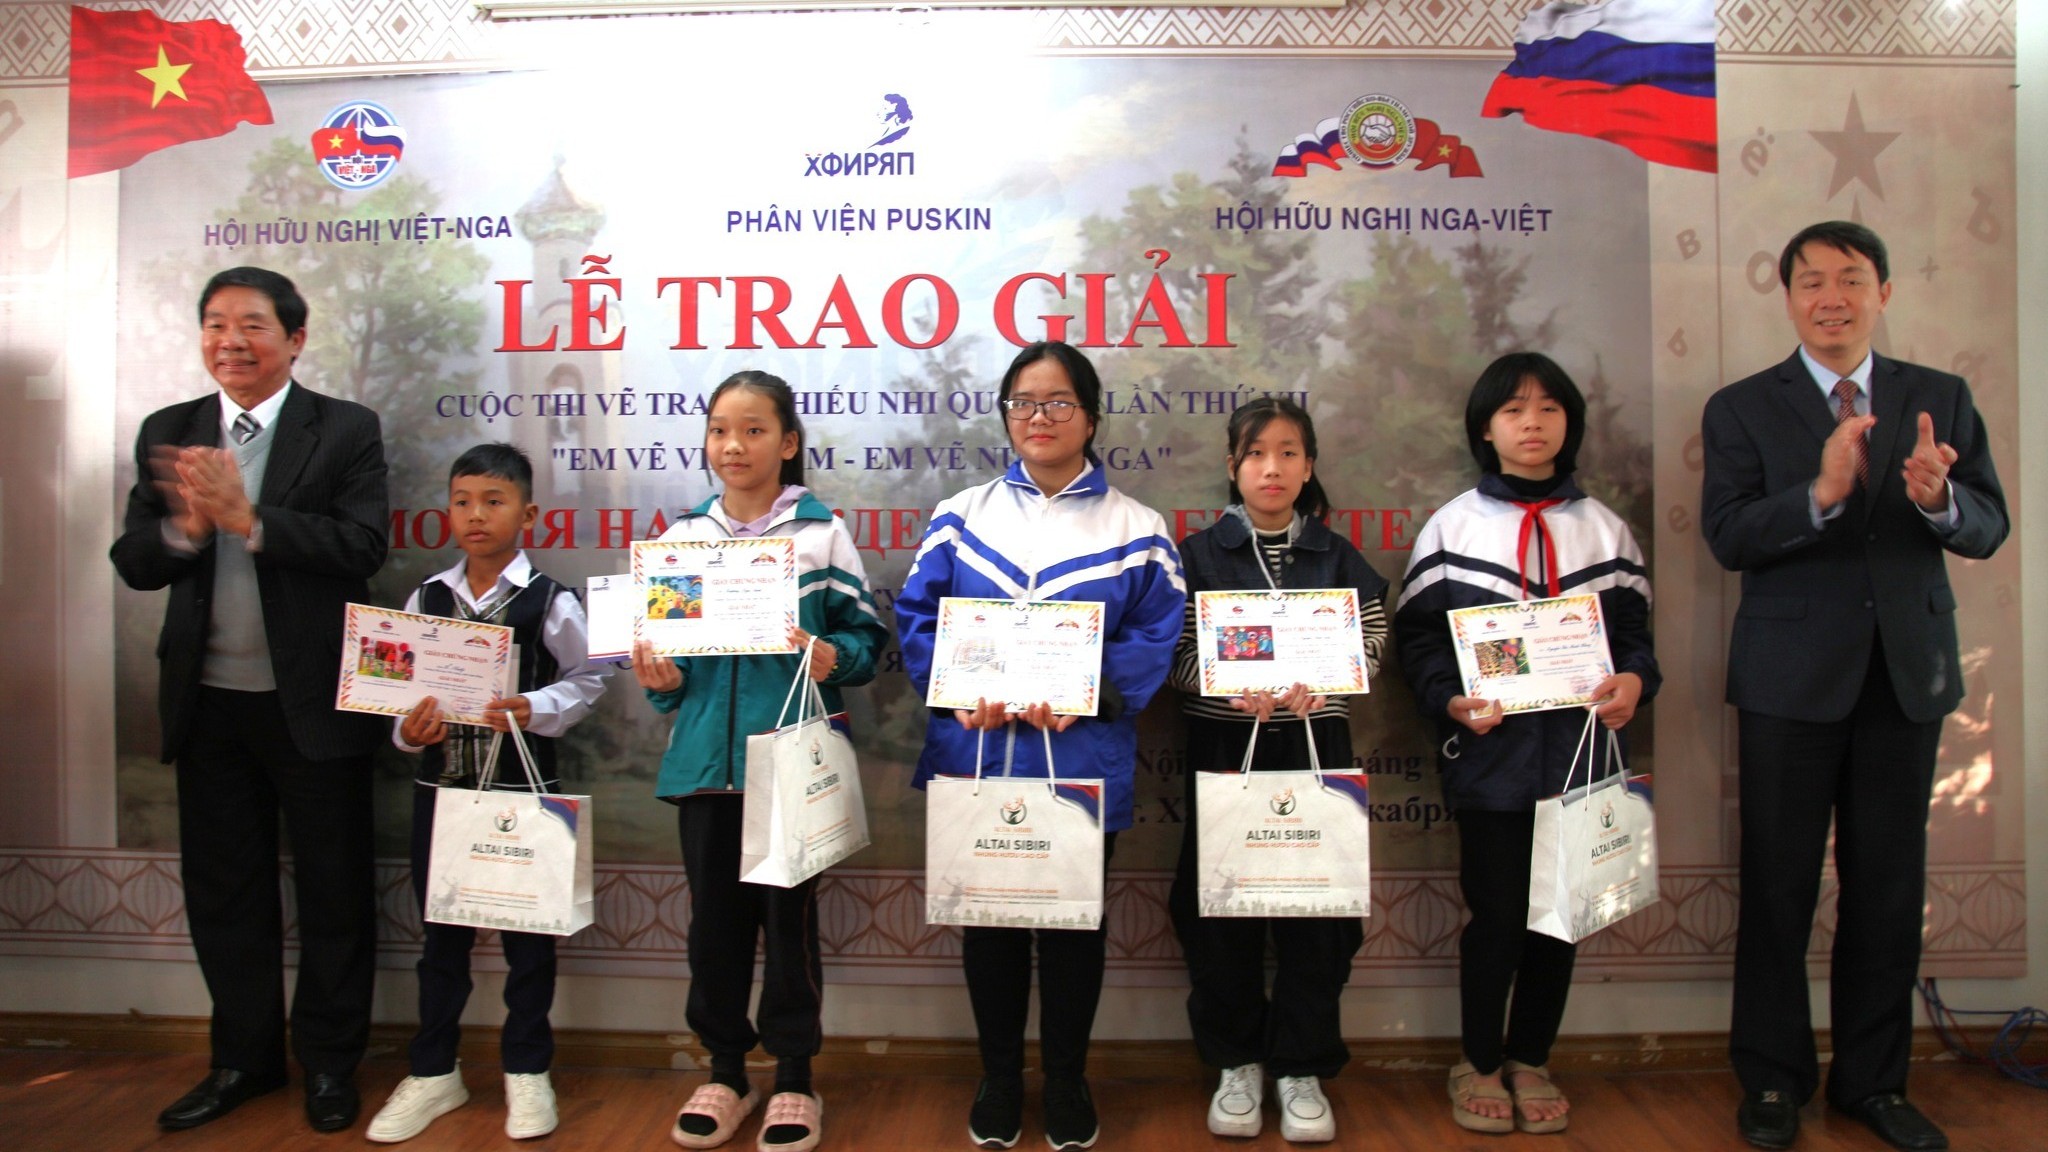 Hợp tác giáo dục - đào tạo là điểm sáng trong quan hệ Việt Nam - Liên bang Nga